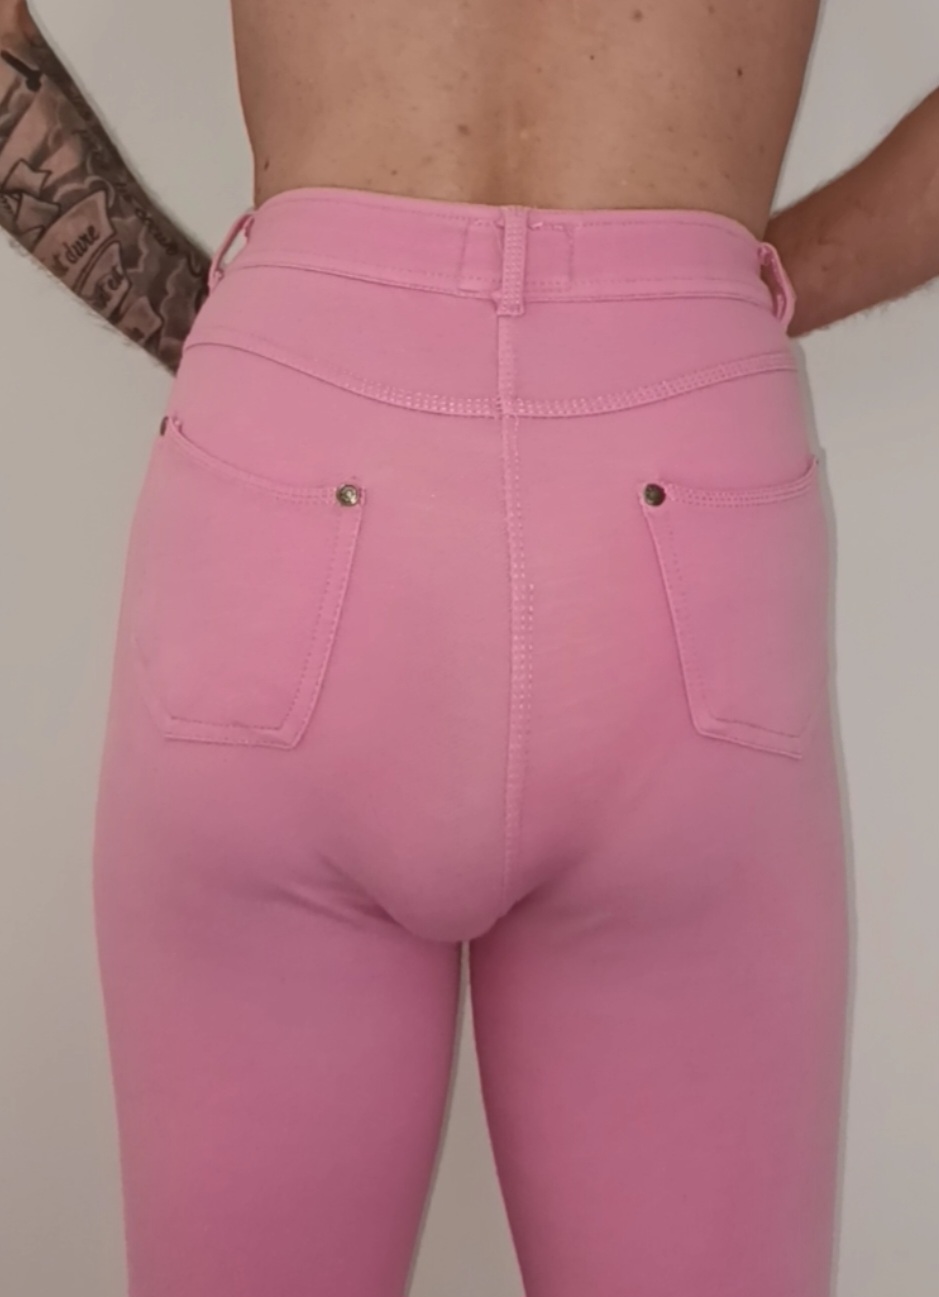 Lexiie in pink pants poops in her white panties